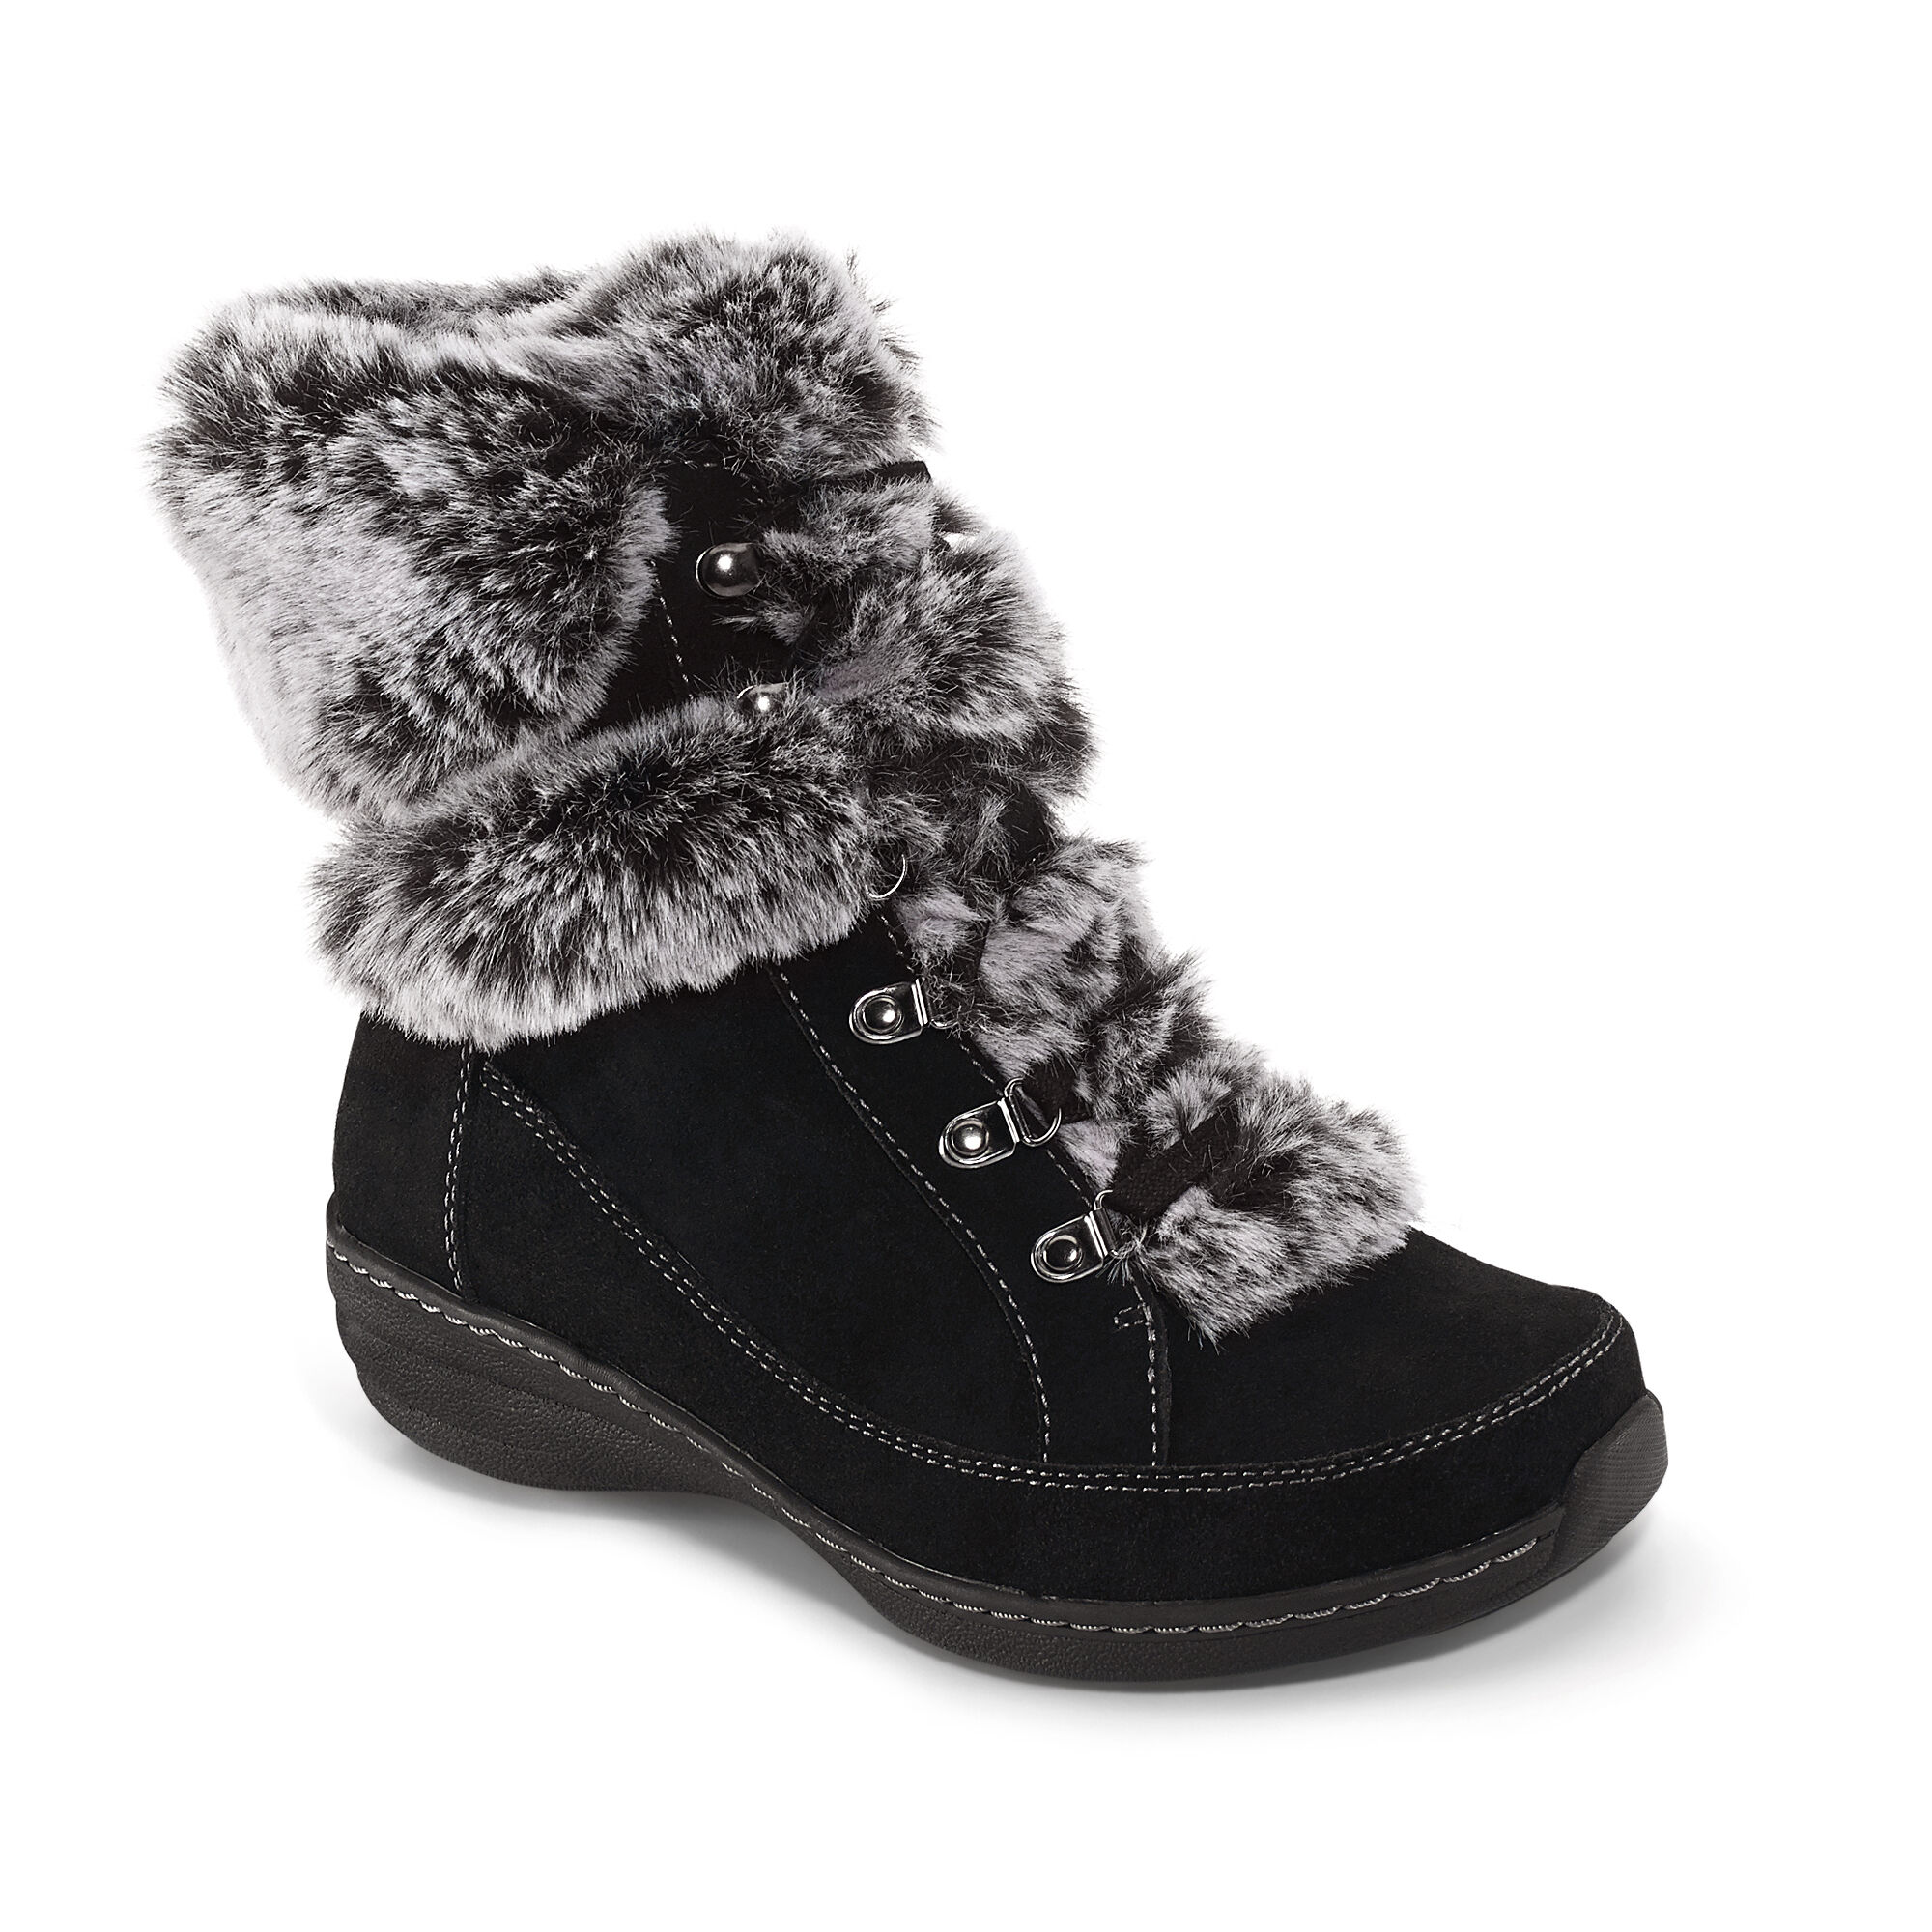 suede winter boots waterproof